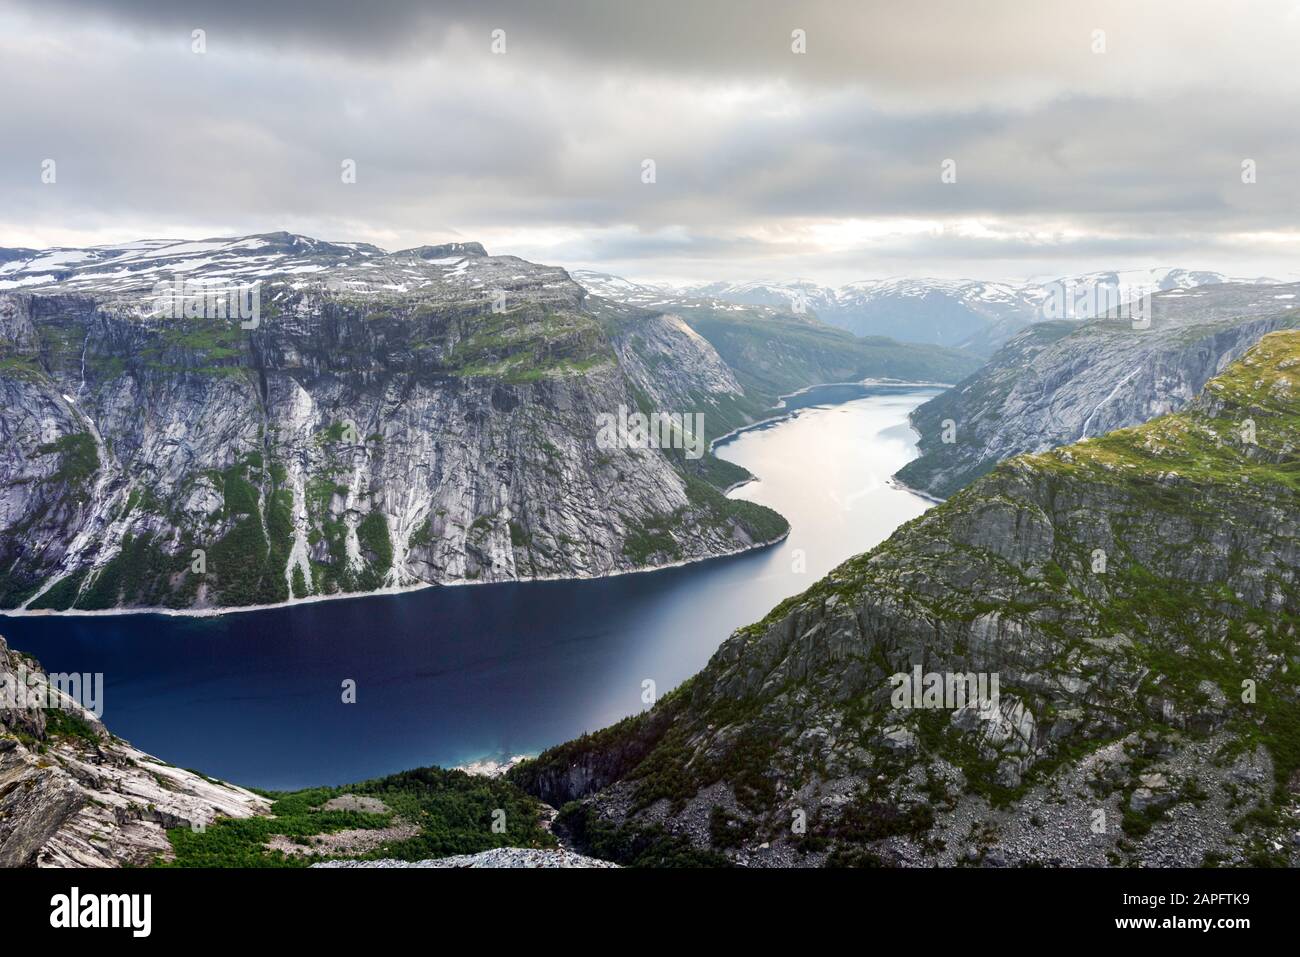 Impresionantes vistas sobre el lago Ringedalsvatnet desde la roca Trolltunga - el más espectacular y famoso acantilado escénico de Noruega. Fotografía de paisajes Foto de stock